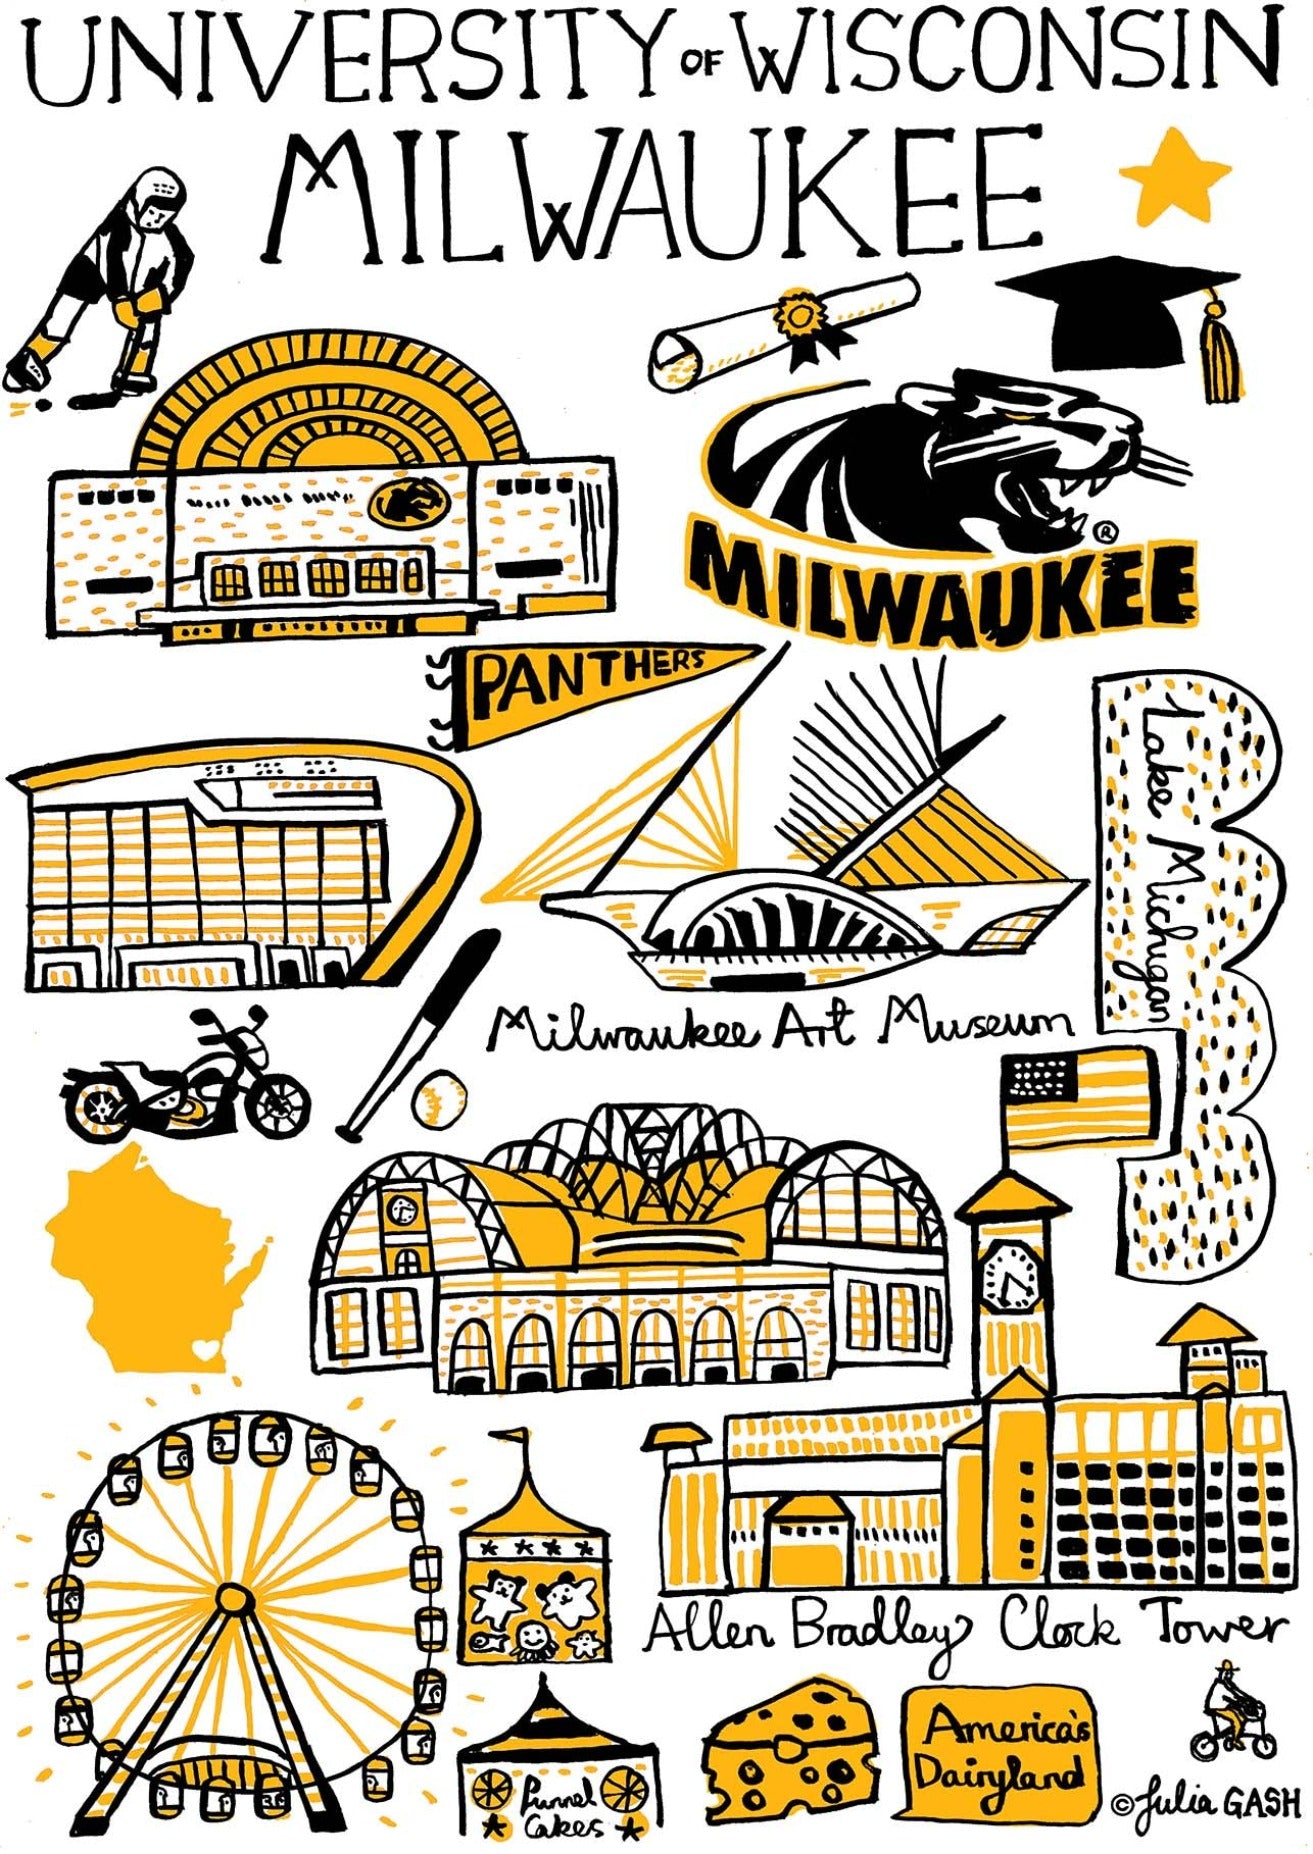 University of Washington - Milwaukee by Julia Gash